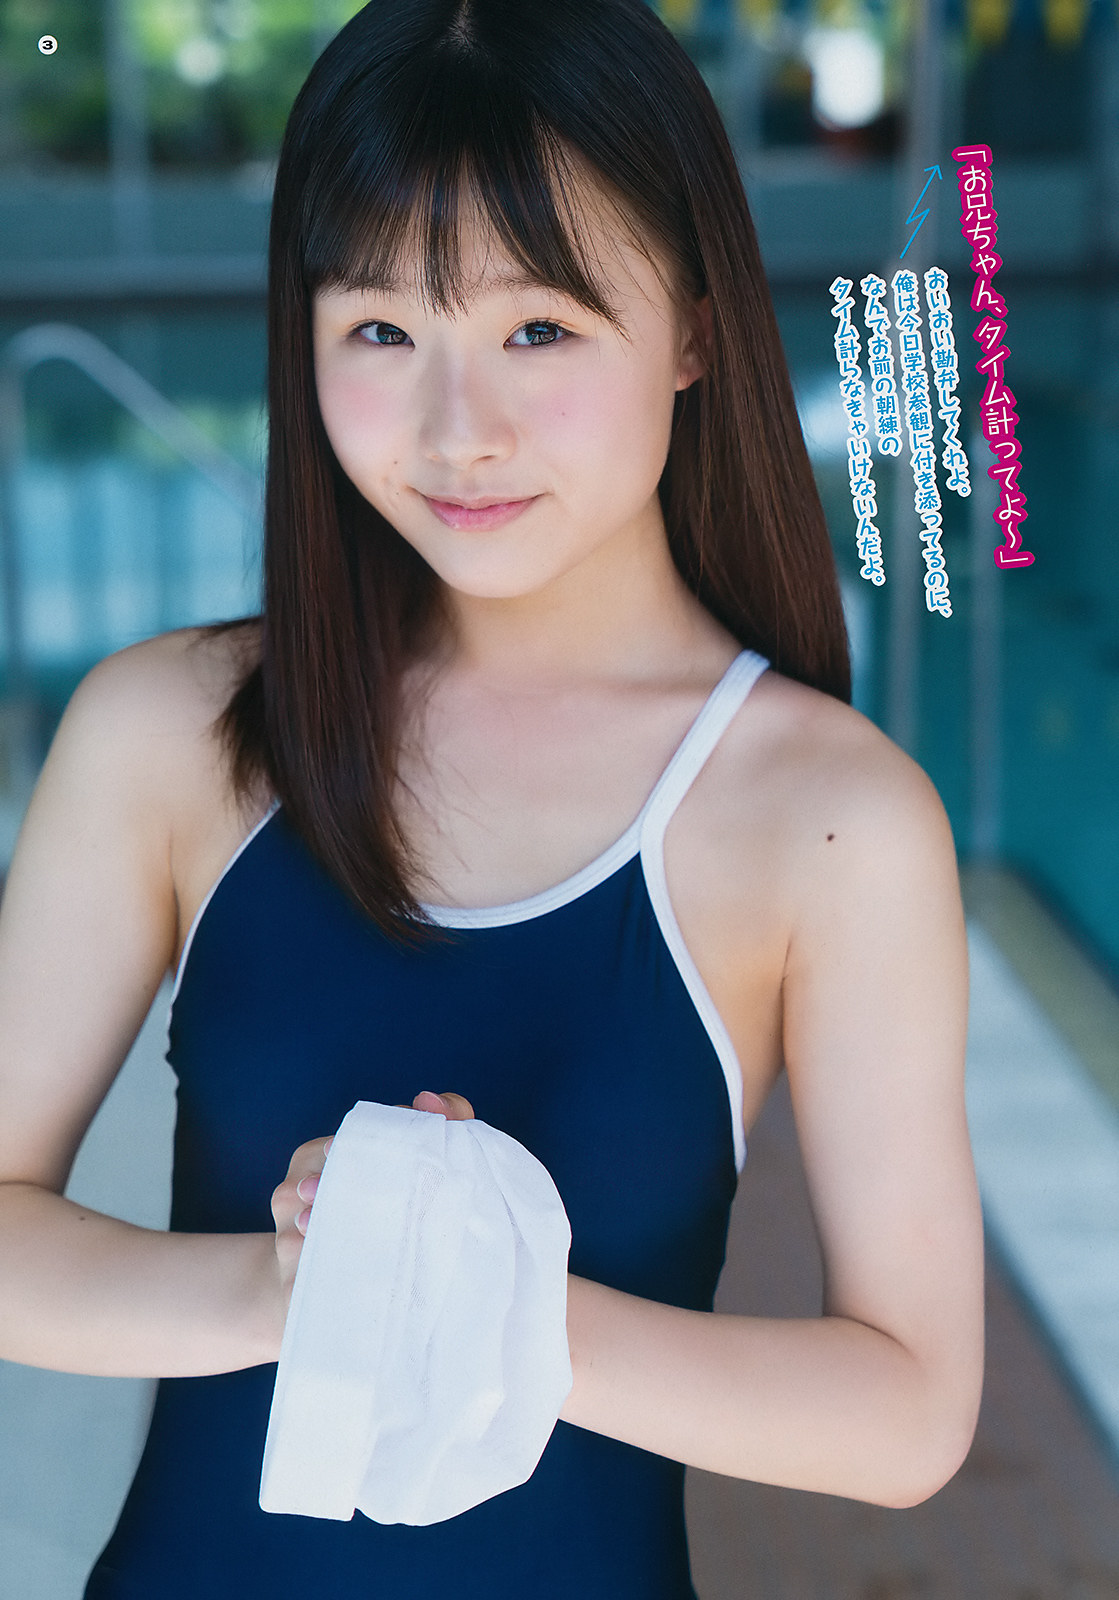 Ami Niikura 新倉愛海, Young Gangan 2019 No.15 (ヤングガンガン 2019年15号)